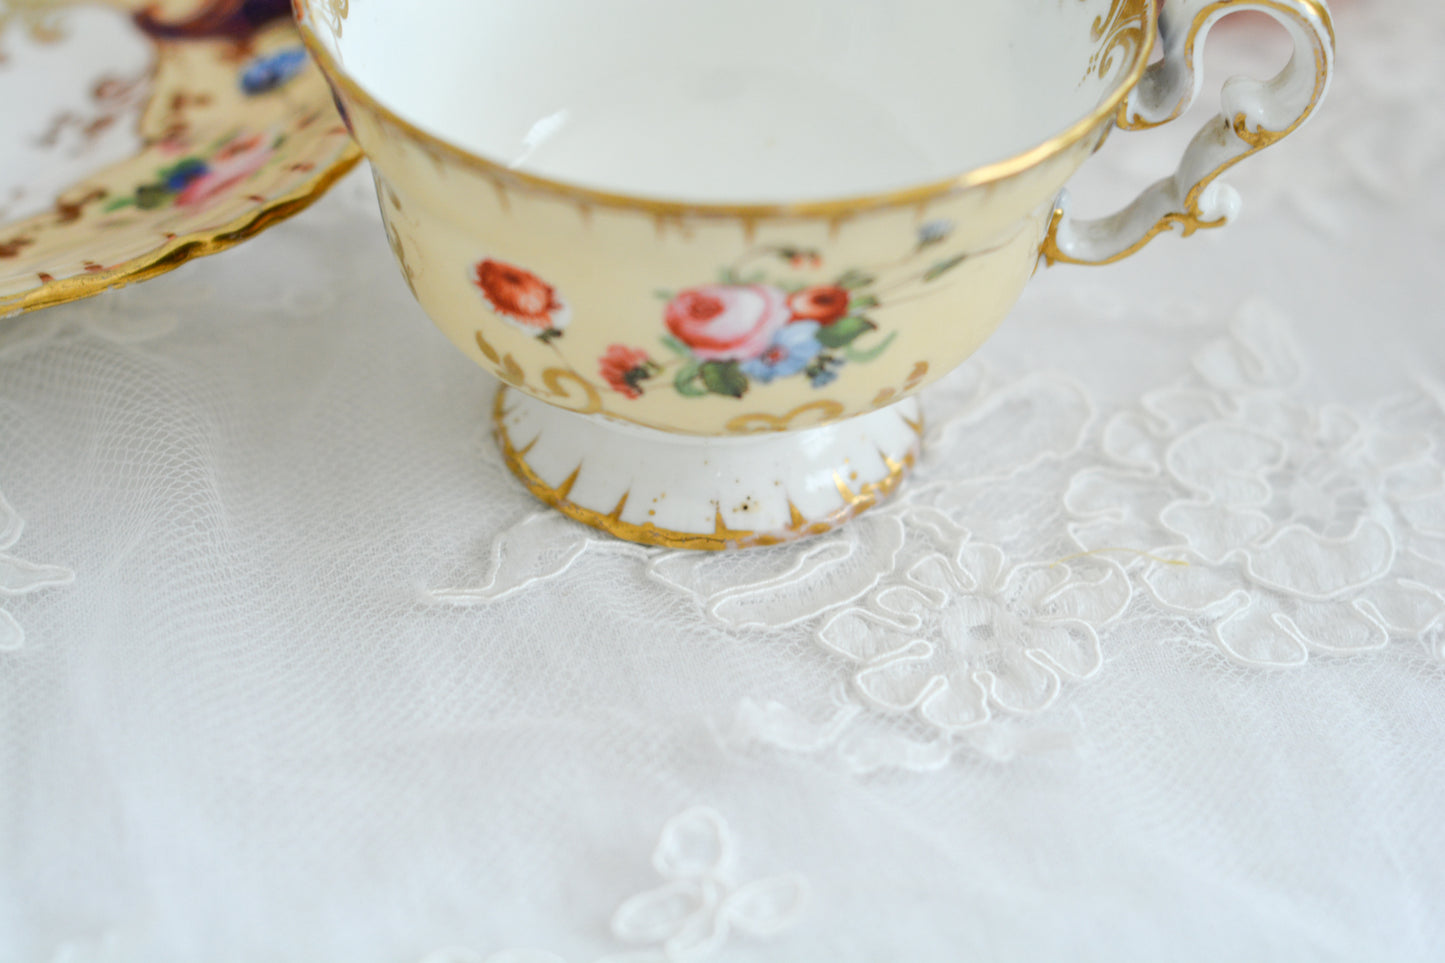 コープランドギャレットの1833年〜1847年頃に作られた貴重なカップ&ソーサーです。コープランド＆ギャレット社は14年ほどしか稼働していなかったのですが、この時に作られたカップは優美で、長い時を経た現代においても人々を魅了しています。こちらのカップも優美なシェイプ、ハンドペイントで描かれた花々は上品で美しく見惚れてしまうほど。長い年月を経てやってきてくれた美しいカップをぜひご覧ください。